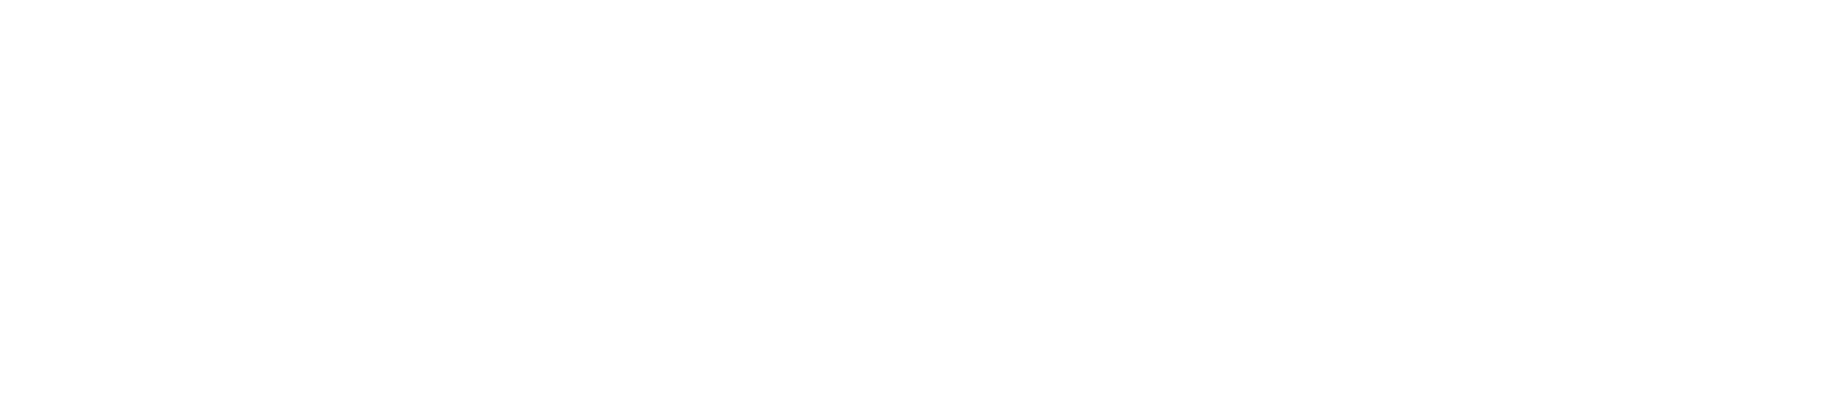 Bracalente Manufacturing Group seit 1950